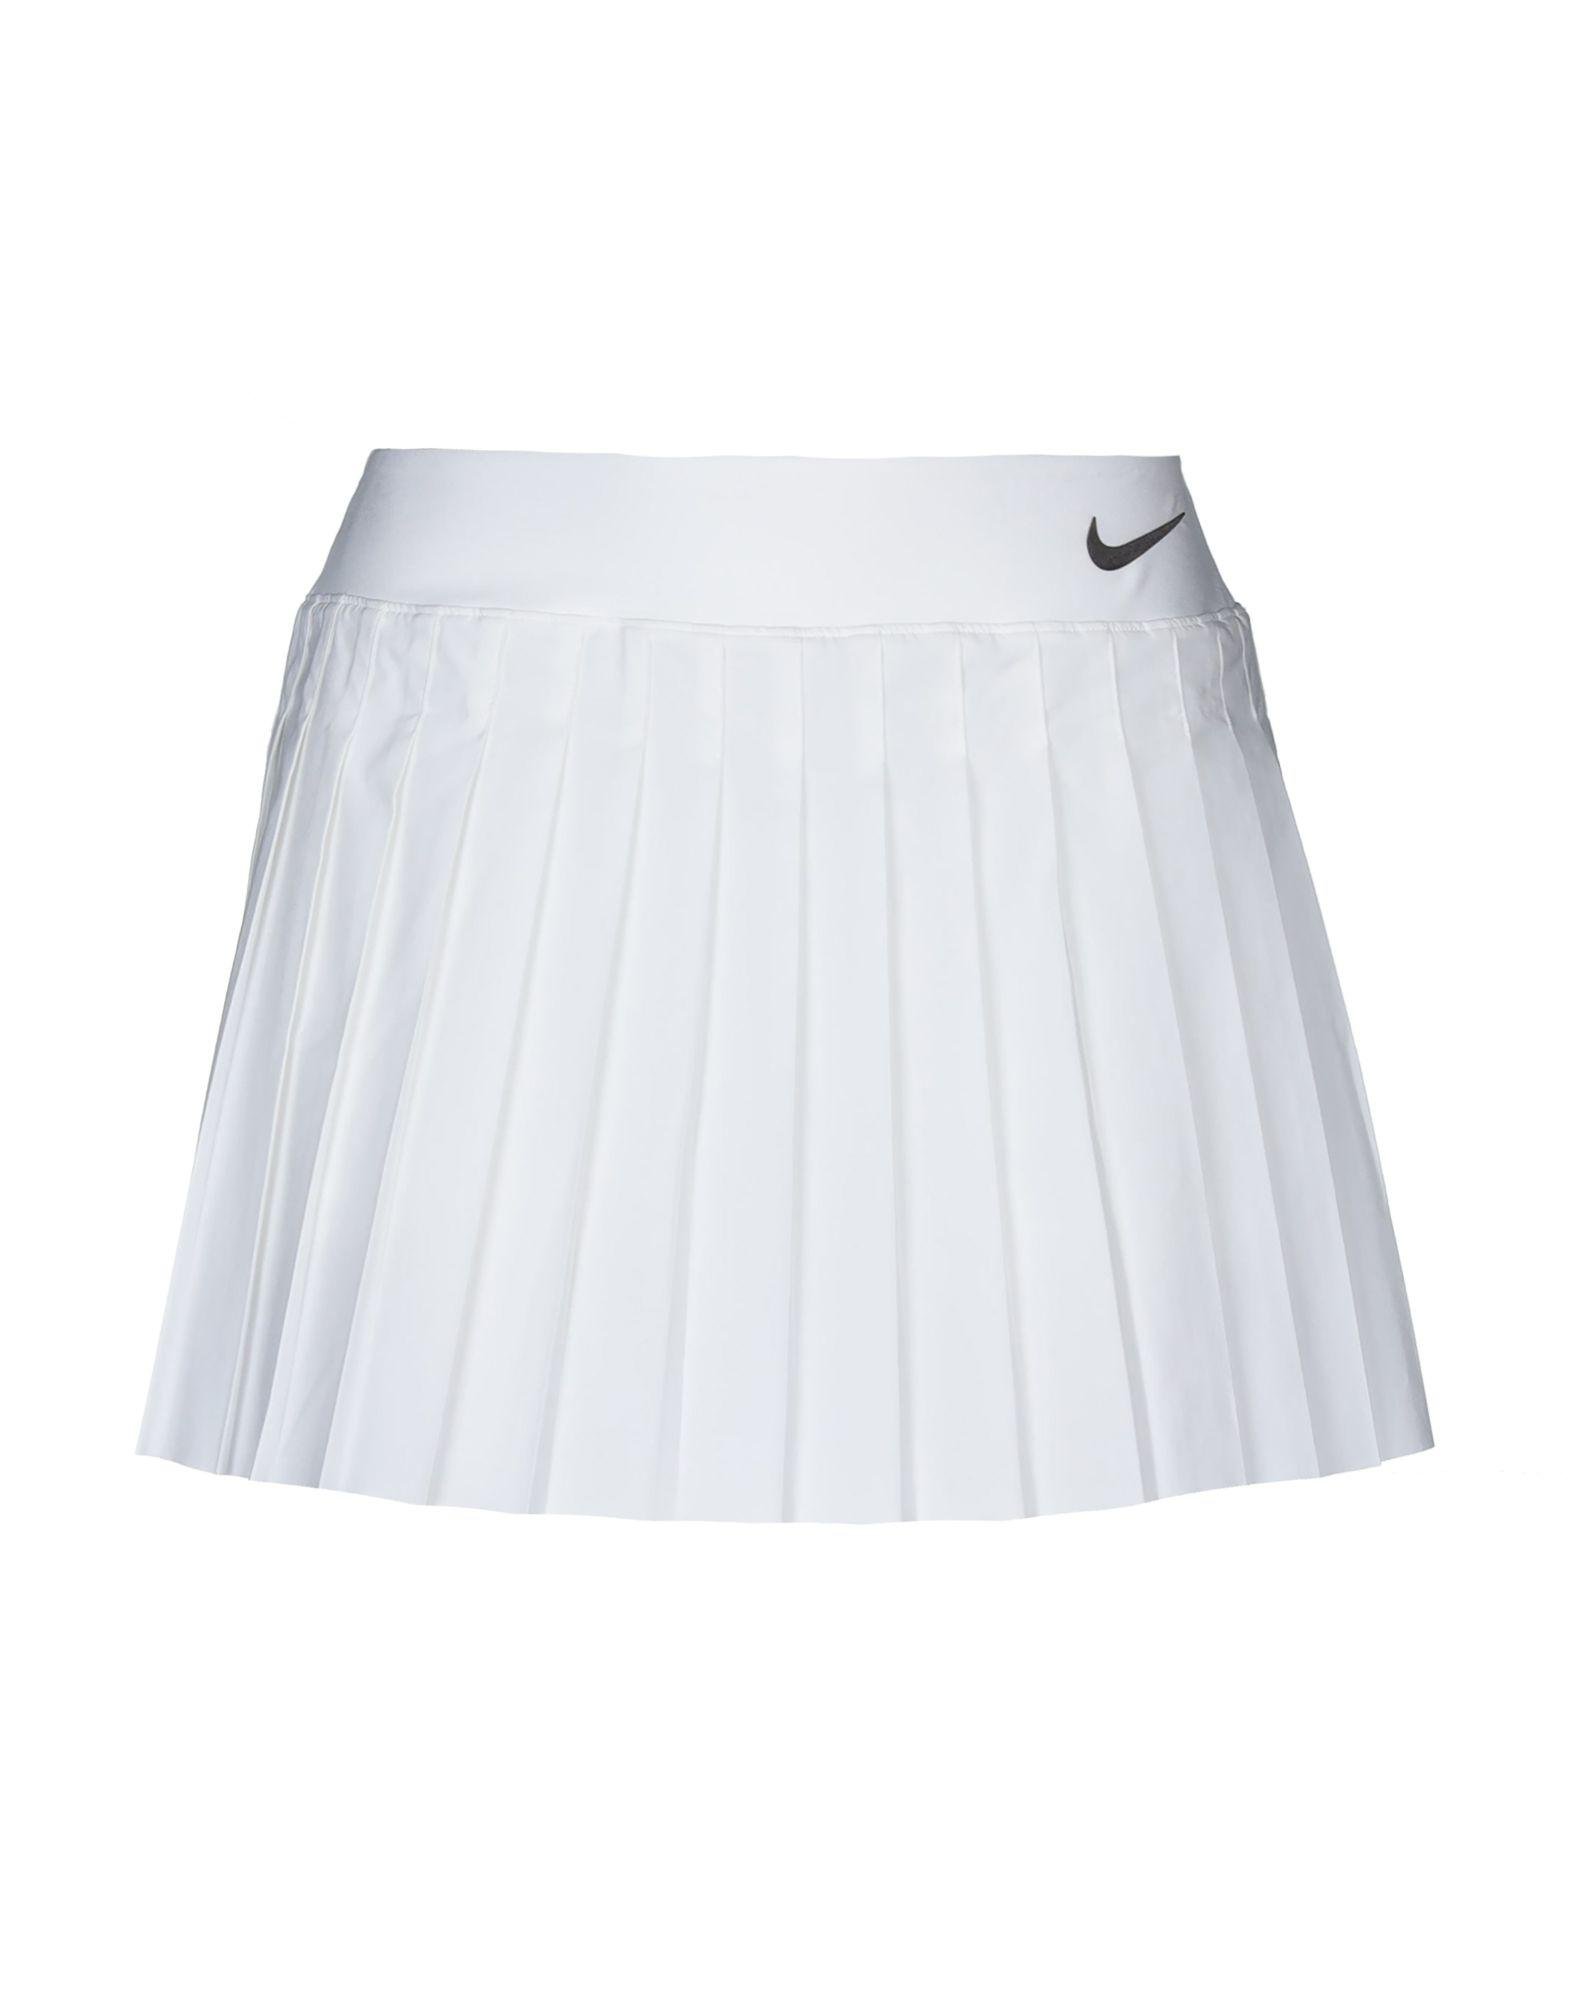 Nike Mini Skirt in White - Lyst